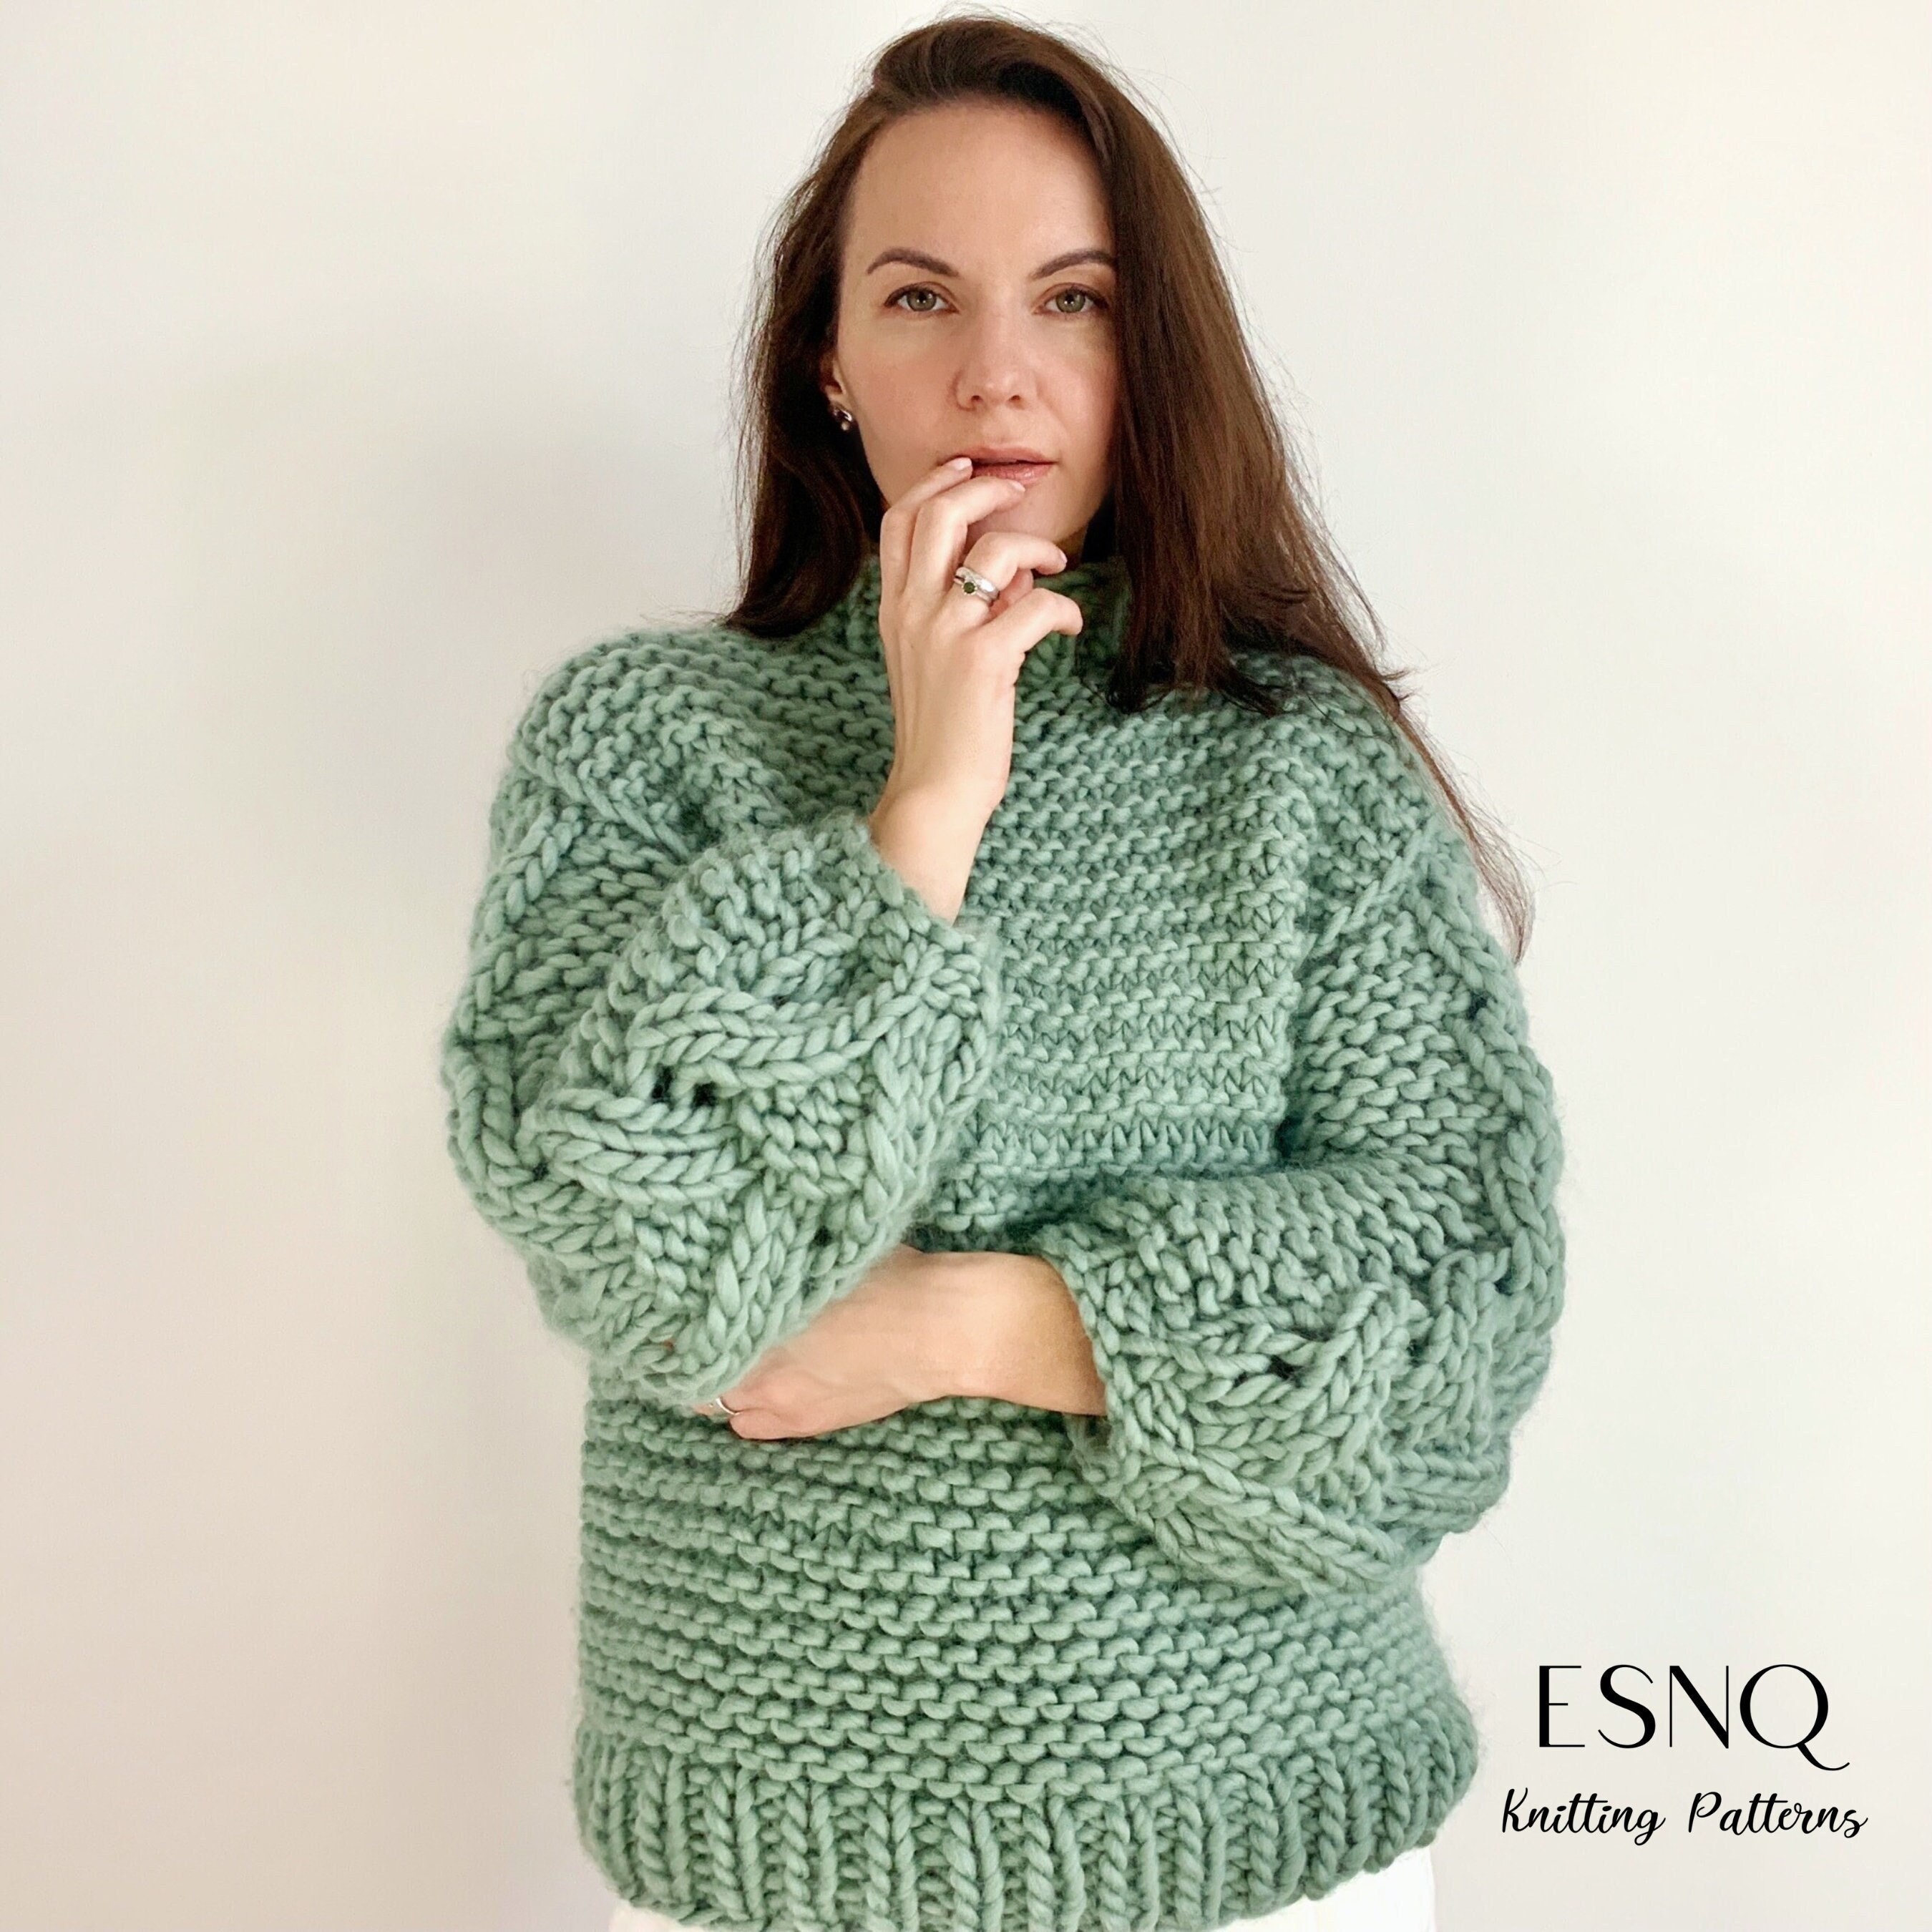 Halcyon Lace sweater pattern by Julia Piro